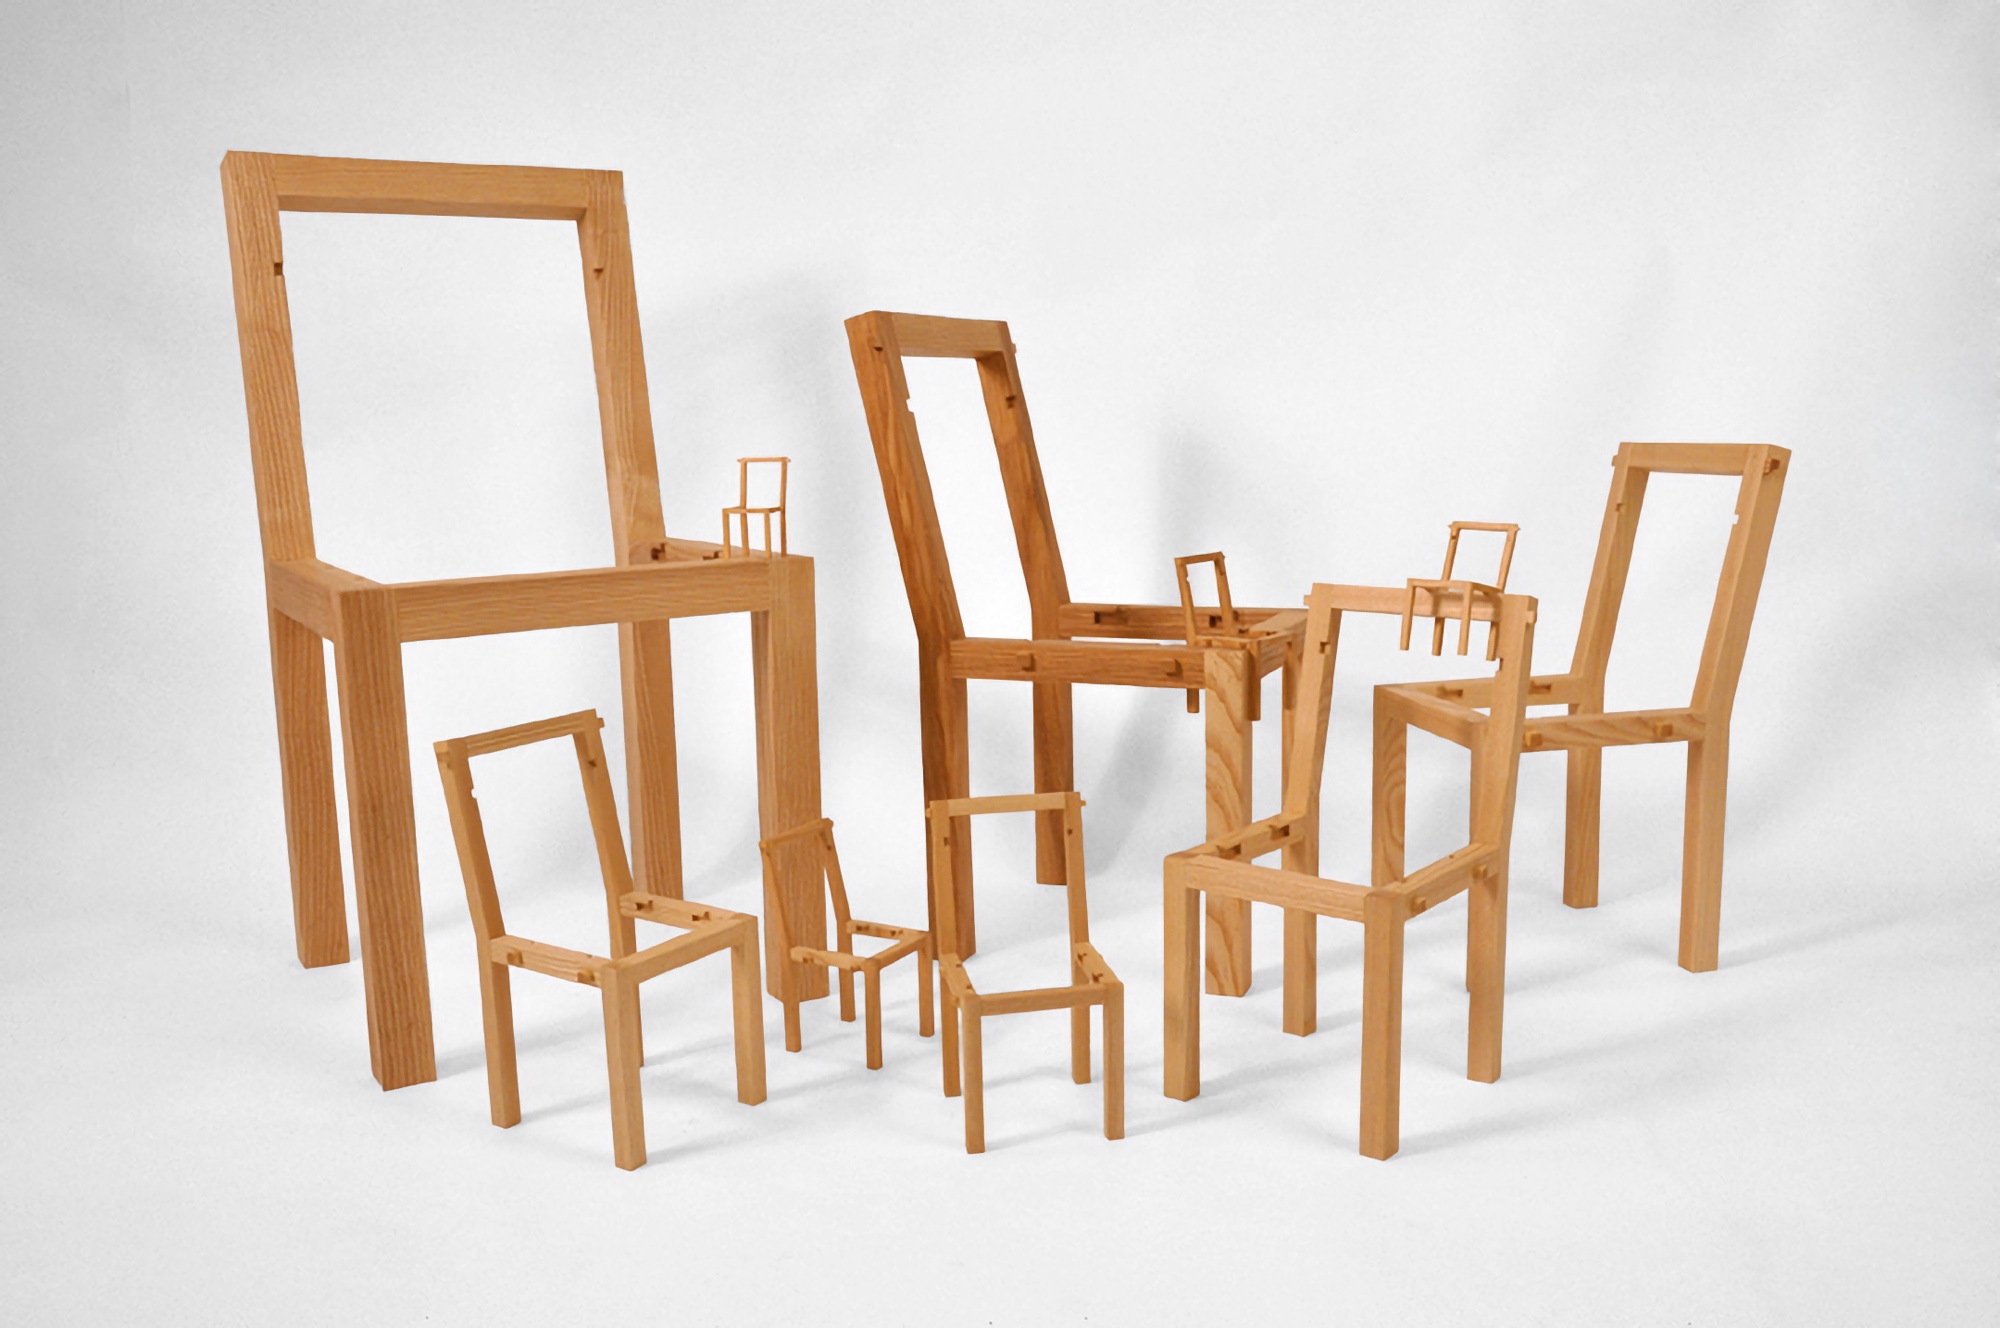 Inception Chair by Vivian Chiu